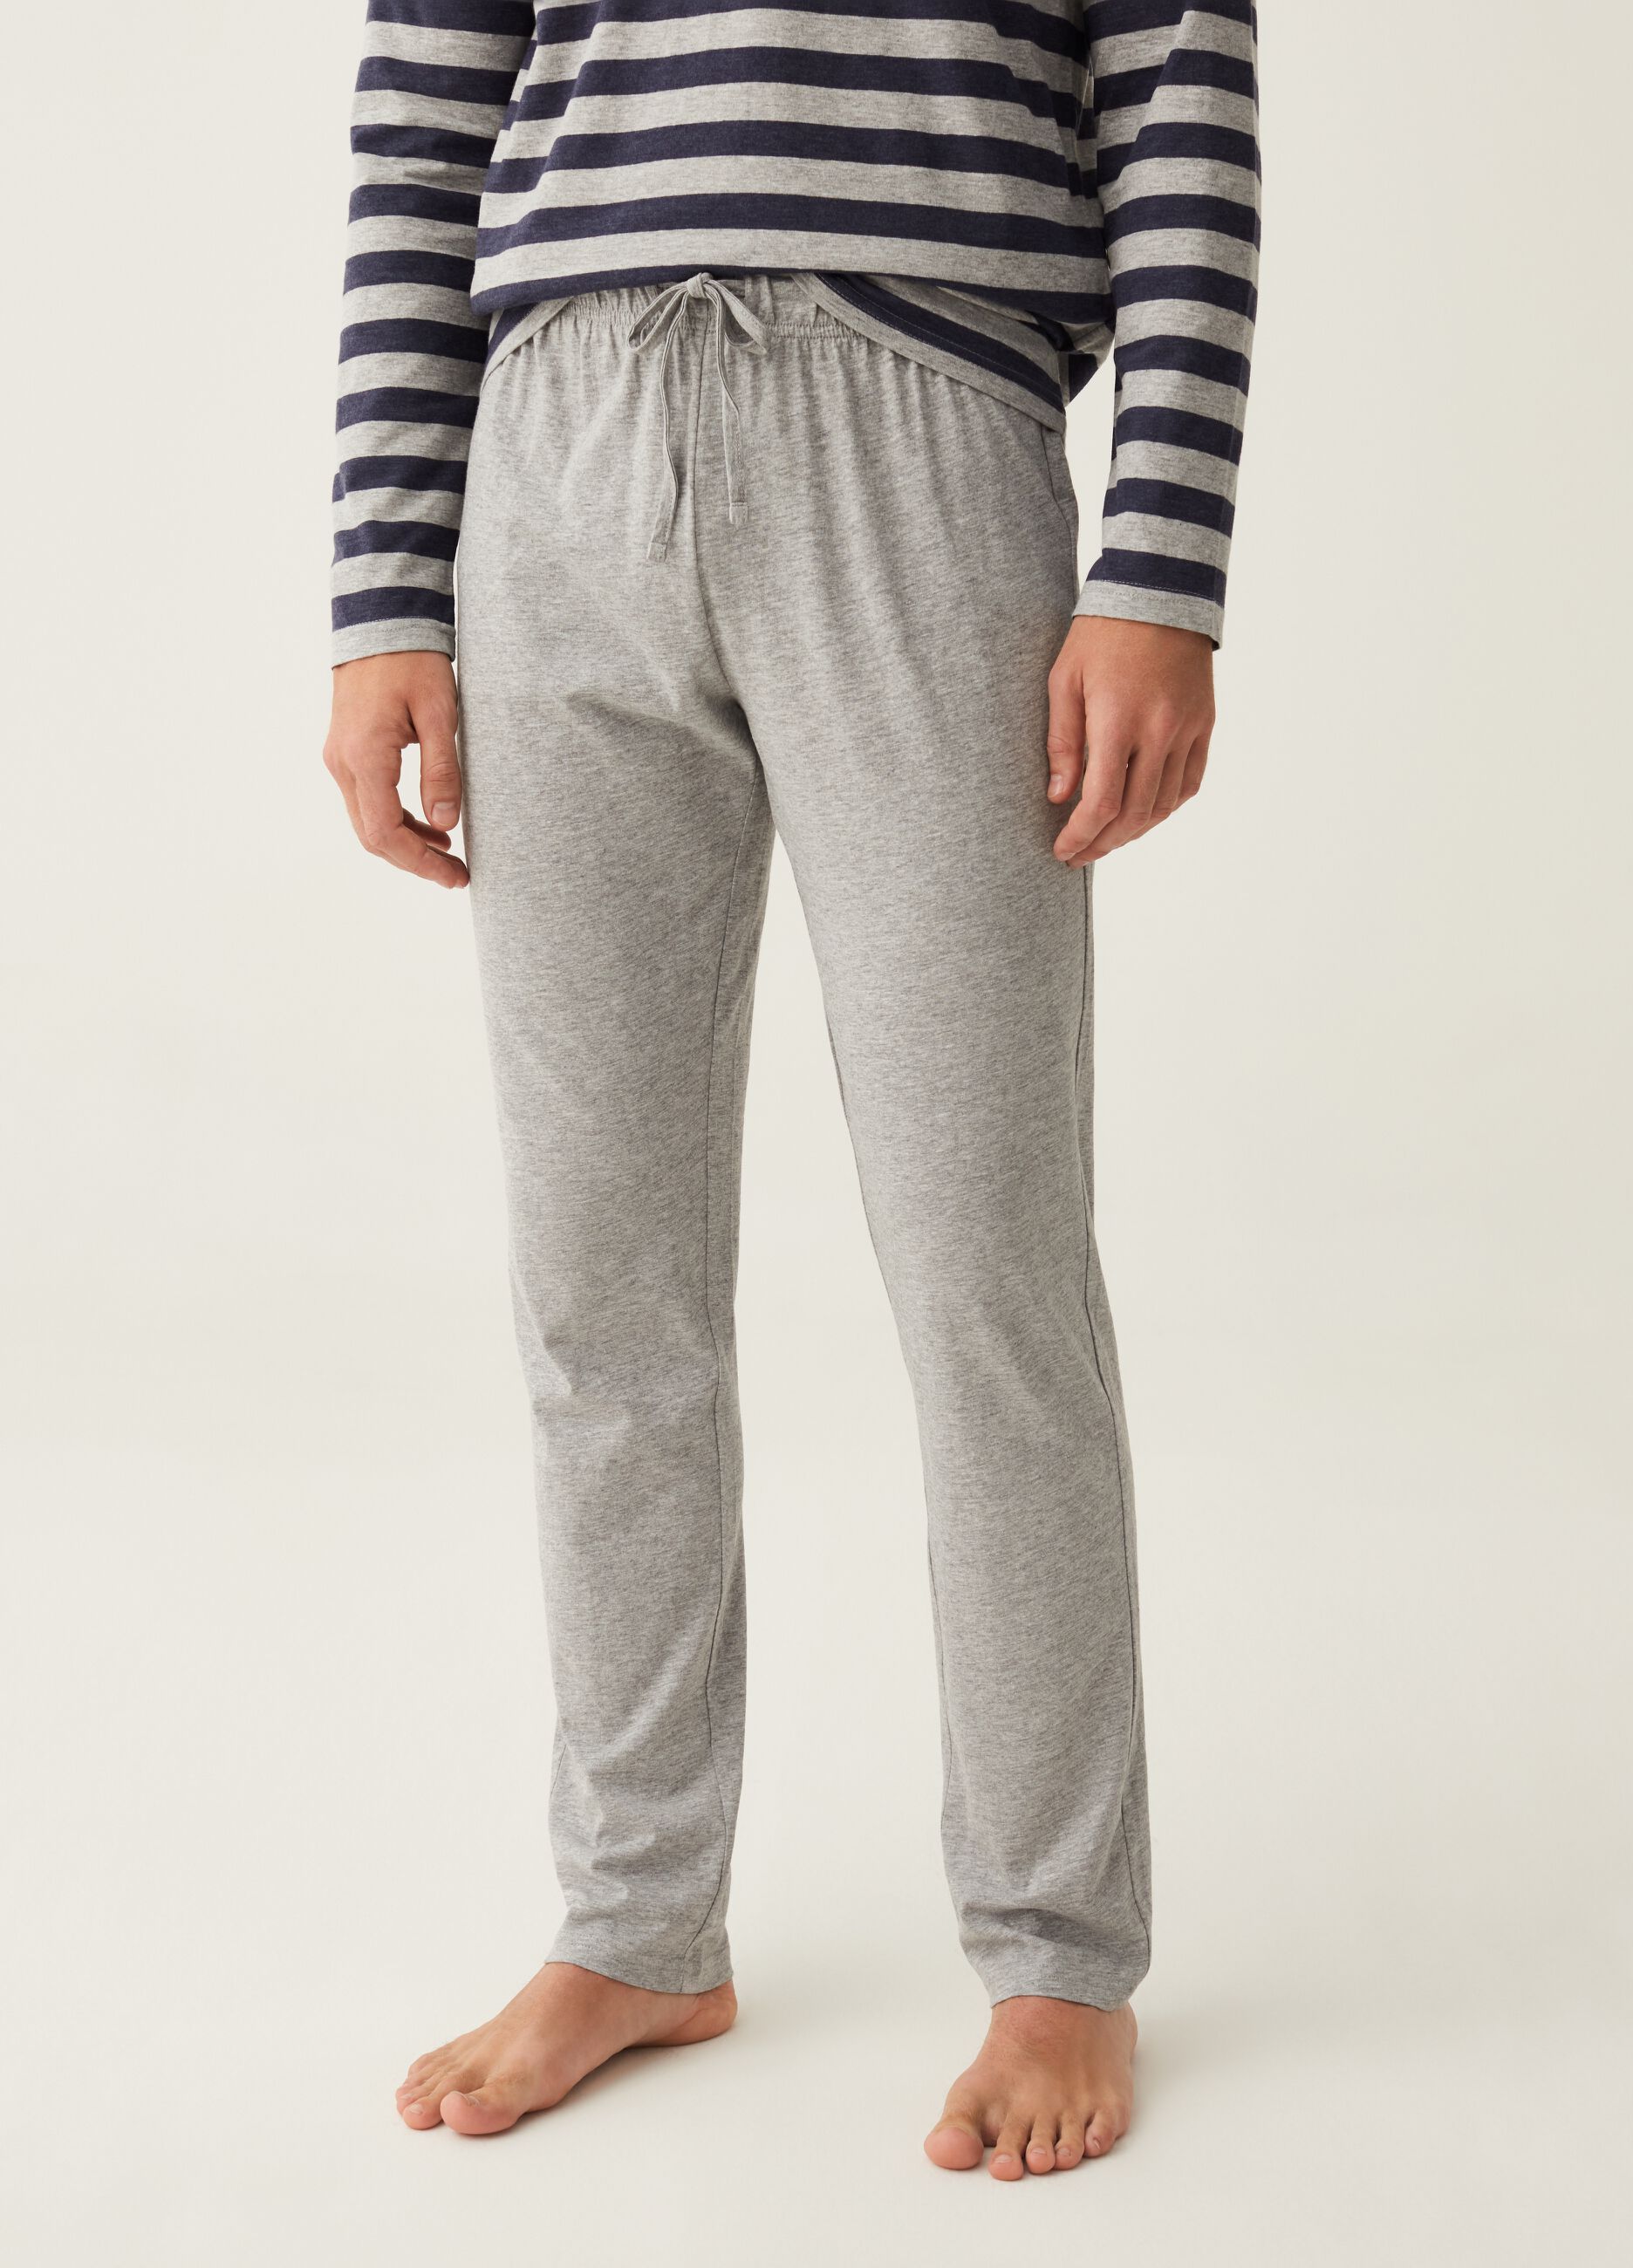 Long pyjamas with striped top_1